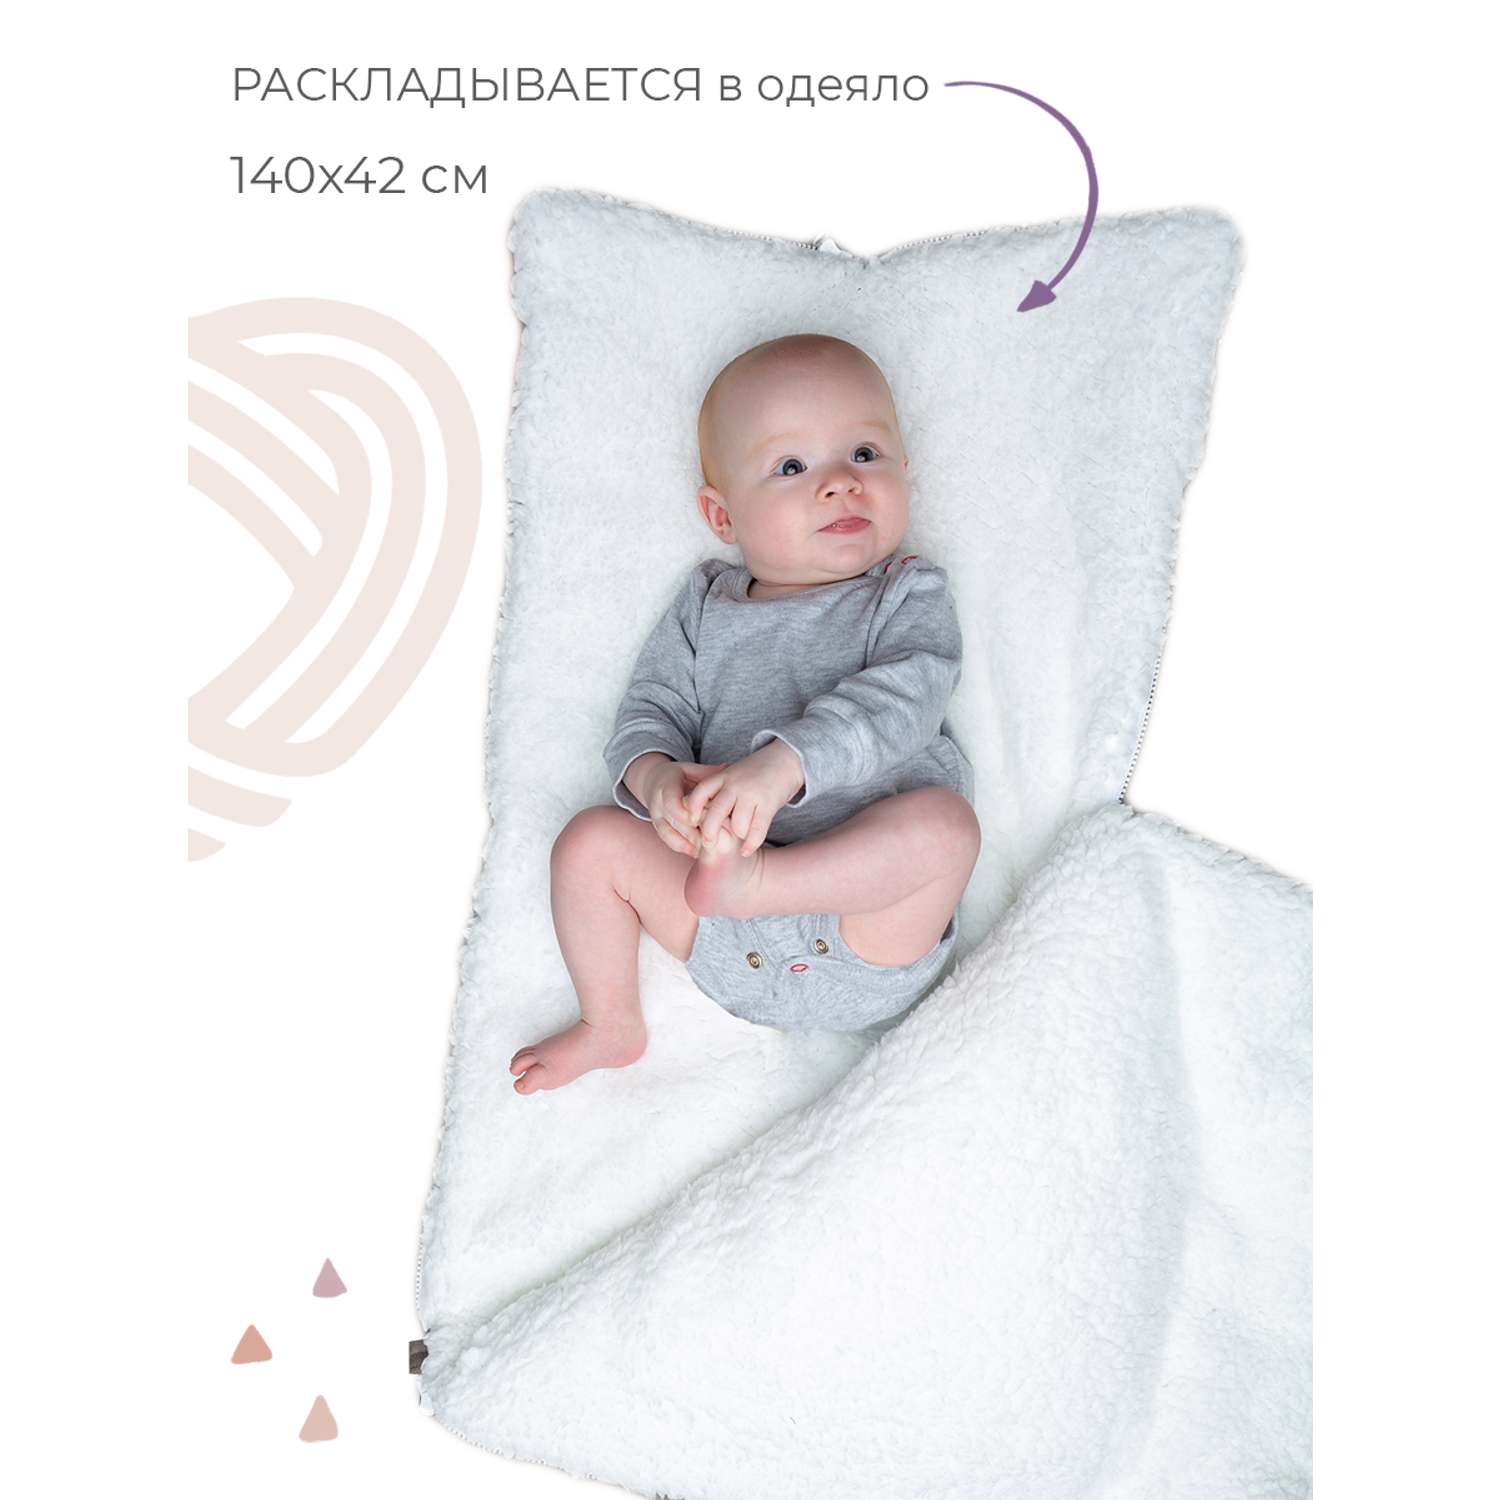 Конверт на выписку inlovery для новорожденного Нордик/серый - фото 3